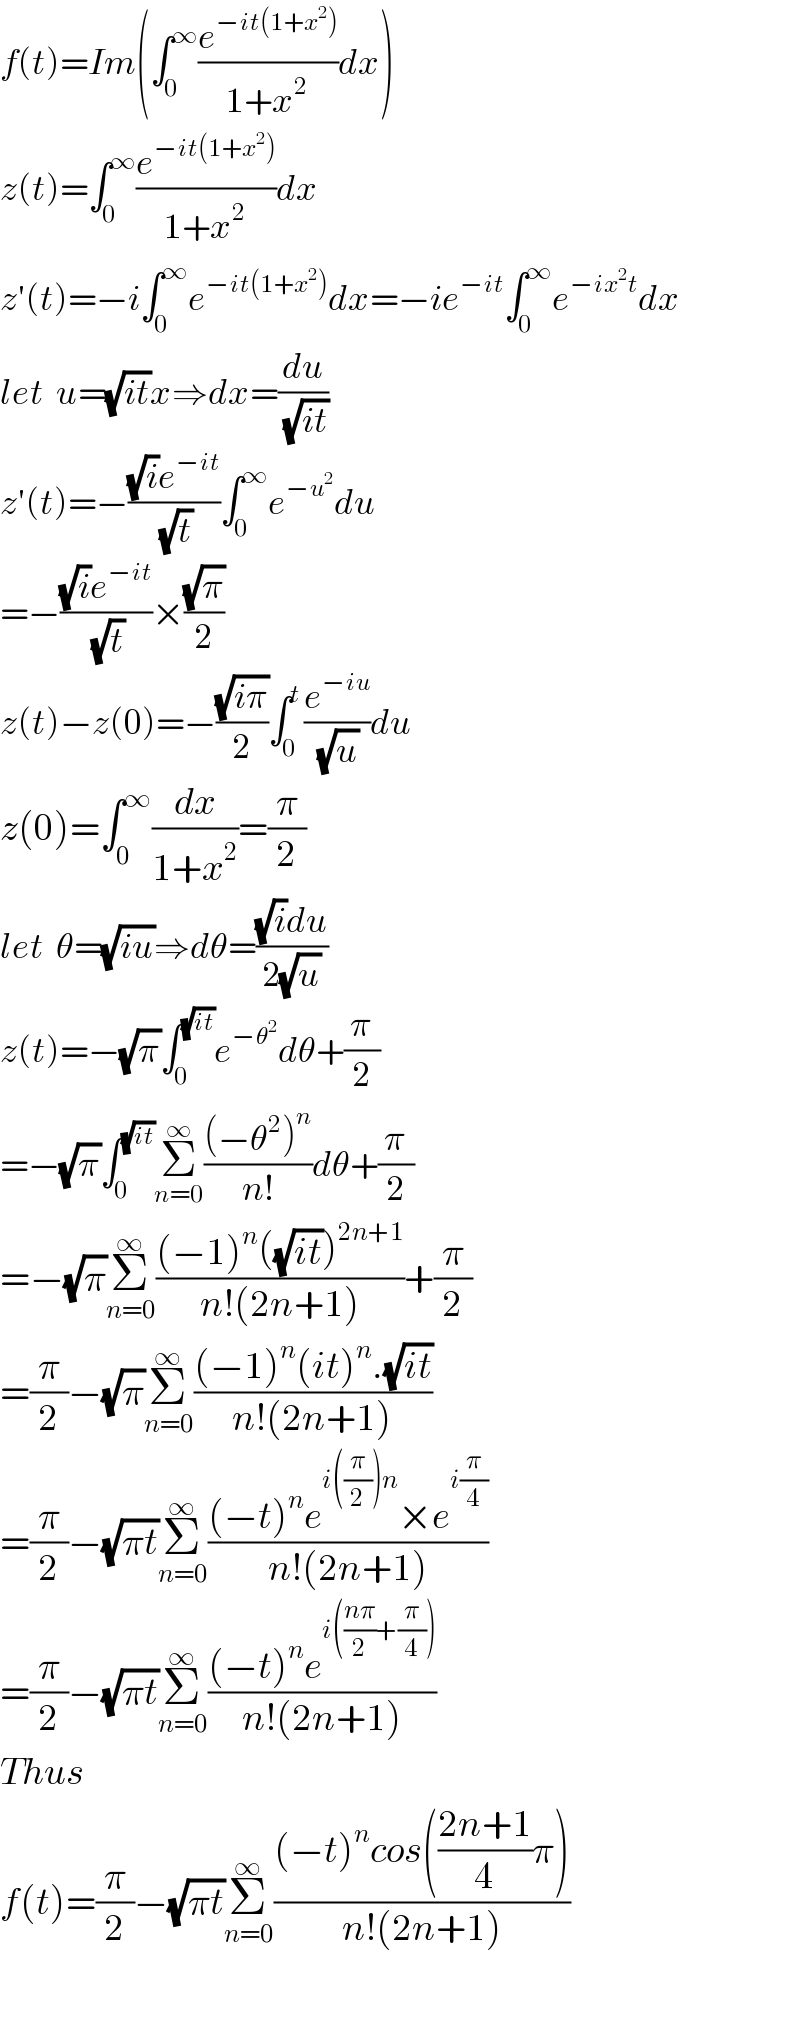 f(t)=Im(∫_0 ^∞ (e^(−it(1+x^2 )) /(1+x^2 ))dx)  z(t)=∫_0 ^∞ (e^(−it(1+x^2 )) /(1+x^2 ))dx  z′(t)=−i∫_0 ^∞ e^(−it(1+x^2 )) dx=−ie^(−it) ∫_0 ^∞ e^(−ix^2 t) dx  let  u=(√(it))x⇒dx=(du/(√(it)))  z′(t)=−(((√i)e^(−it) )/(√t))∫_0 ^∞ e^(−u^2 ) du  =−(((√i)e^(−it) )/(√t))×((√π)/2)   z(t)−z(0)=−((√(iπ))/2)∫_0 ^t (e^(−iu) /(√u))du    z(0)=∫_0 ^∞ (dx/(1+x^2 ))=(π/2)  let  θ=(√(iu))⇒dθ=(((√i)du)/(2(√u)))  z(t)=−(√π)∫_0 ^(√(it)) e^(−θ^2 ) dθ+(π/2)  =−(√π)∫_0 ^(√(it)) Σ_(n=0) ^∞ (((−θ^2 )^n )/(n!))dθ+(π/2)  =−(√π)Σ_(n=0) ^∞ (((−1)^n ((√(it)))^(2n+1) )/(n!(2n+1)))+(π/2)  =(π/2)−(√π)Σ_(n=0) ^∞ (((−1)^n (it)^n .(√(it)))/(n!(2n+1)))  =(π/2)−(√(πt))Σ_(n=0) ^∞ (((−t)^n e^(i((π/2))n) ×e^(i(π/4)) )/(n!(2n+1)))  =(π/2)−(√(πt))Σ_(n=0) ^∞ (((−t)^n e^(i(((nπ)/2)+(π/4))) )/(n!(2n+1)))  Thus   f(t)=(π/2)−(√(πt))Σ_(n=0) ^∞ (((−t)^n cos(((2n+1)/4)π))/(n!(2n+1)))    